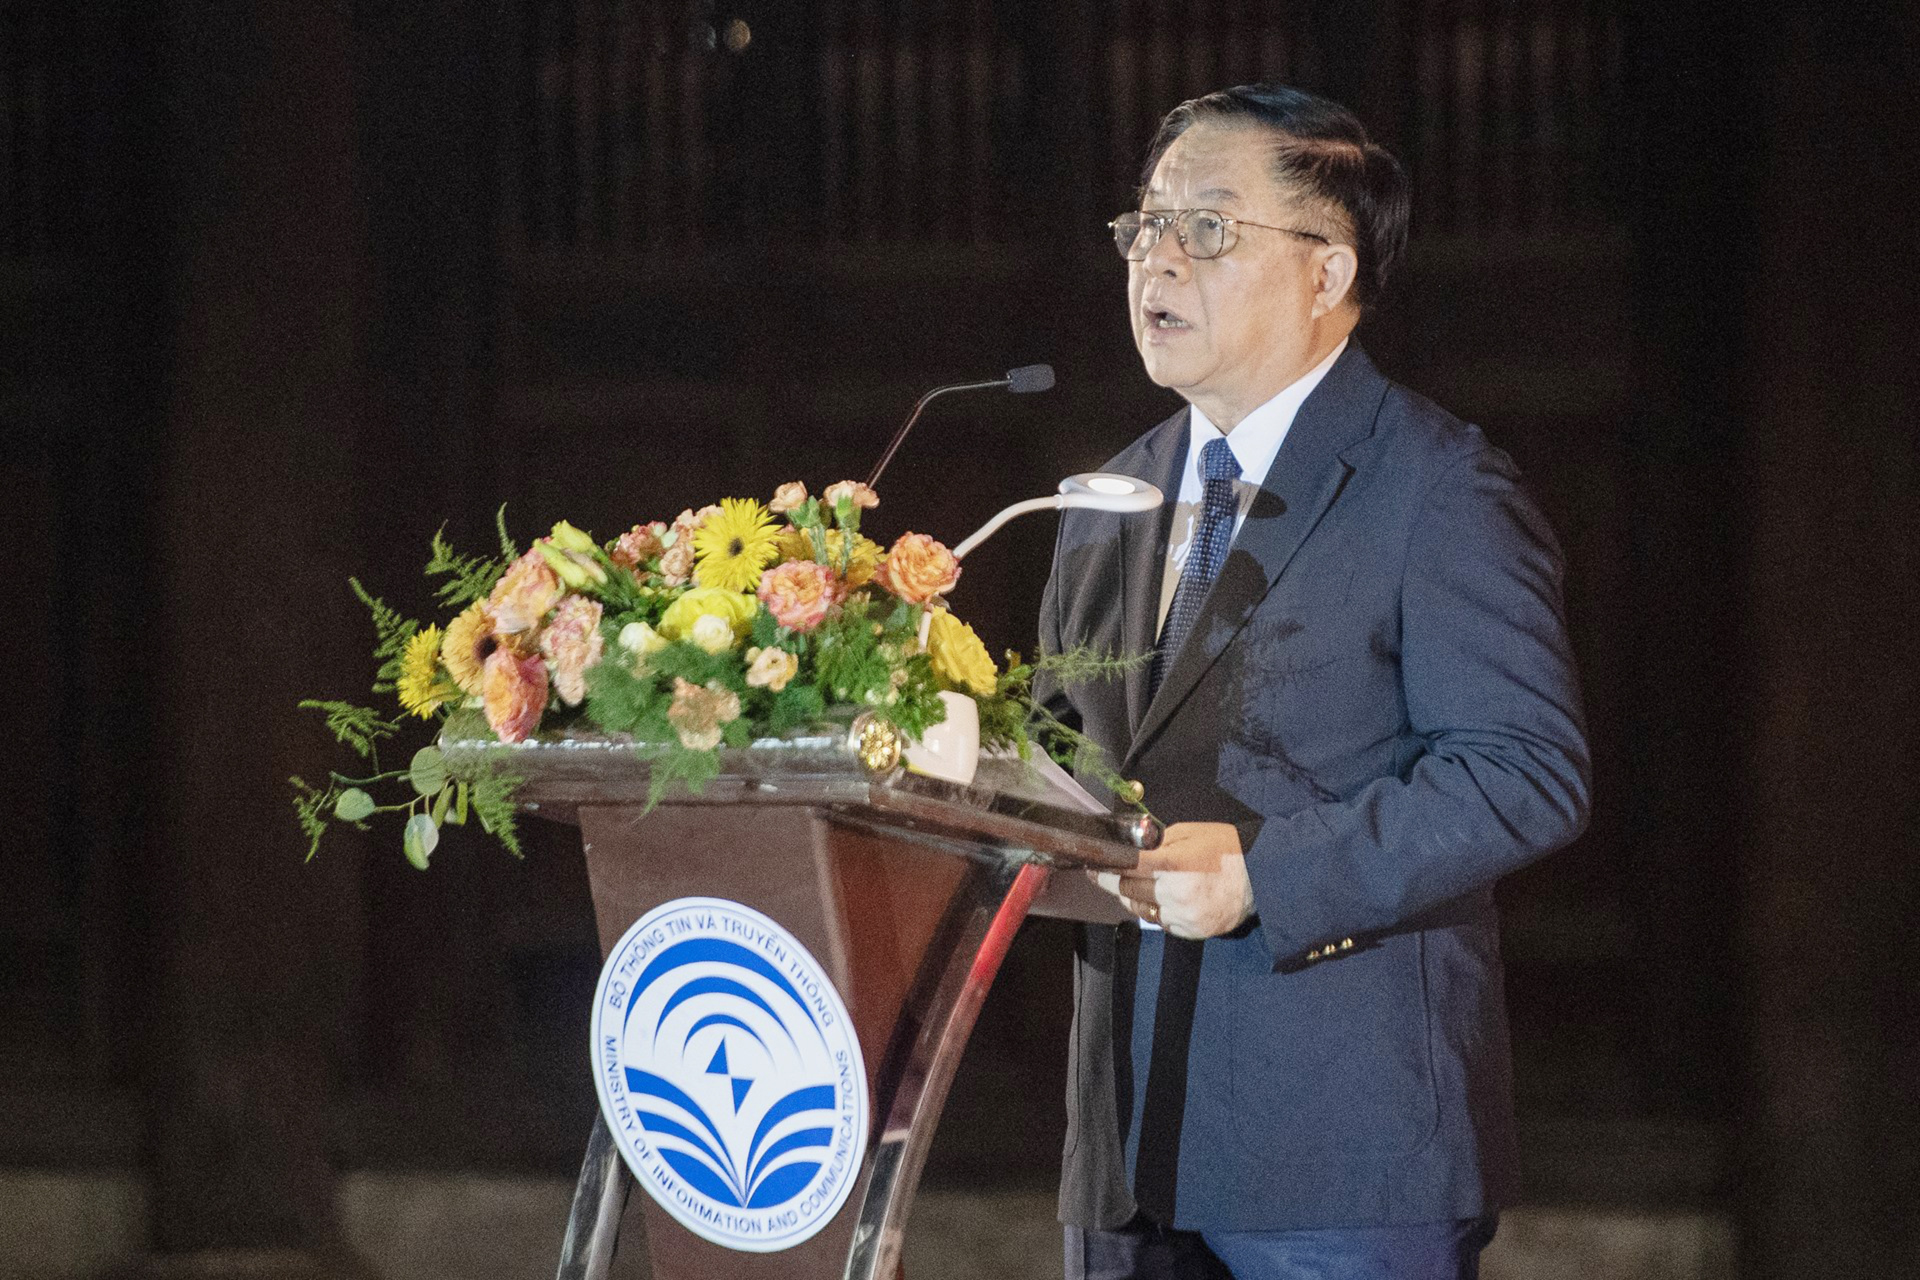 Đồng chí Nguyễn Trọng Nghĩa, Bí thư Trung ương, Trưởng Ban Tuyên giáo Trung ương phát biểu chỉ đạo tại buổi lễ